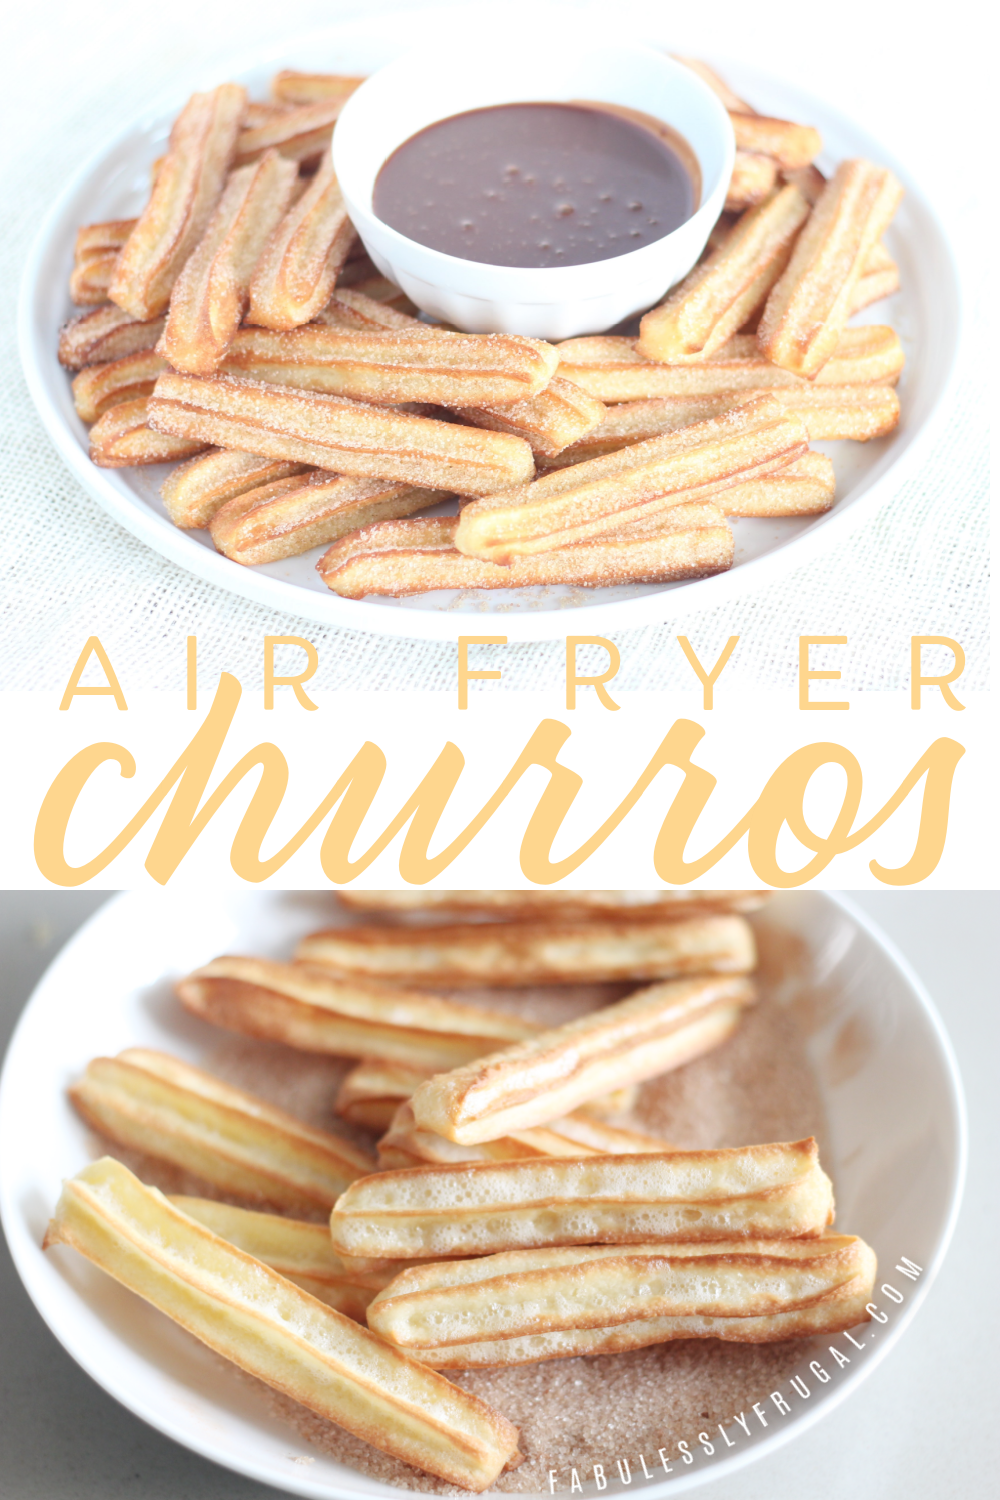 cinnamon sugar air fryer churros